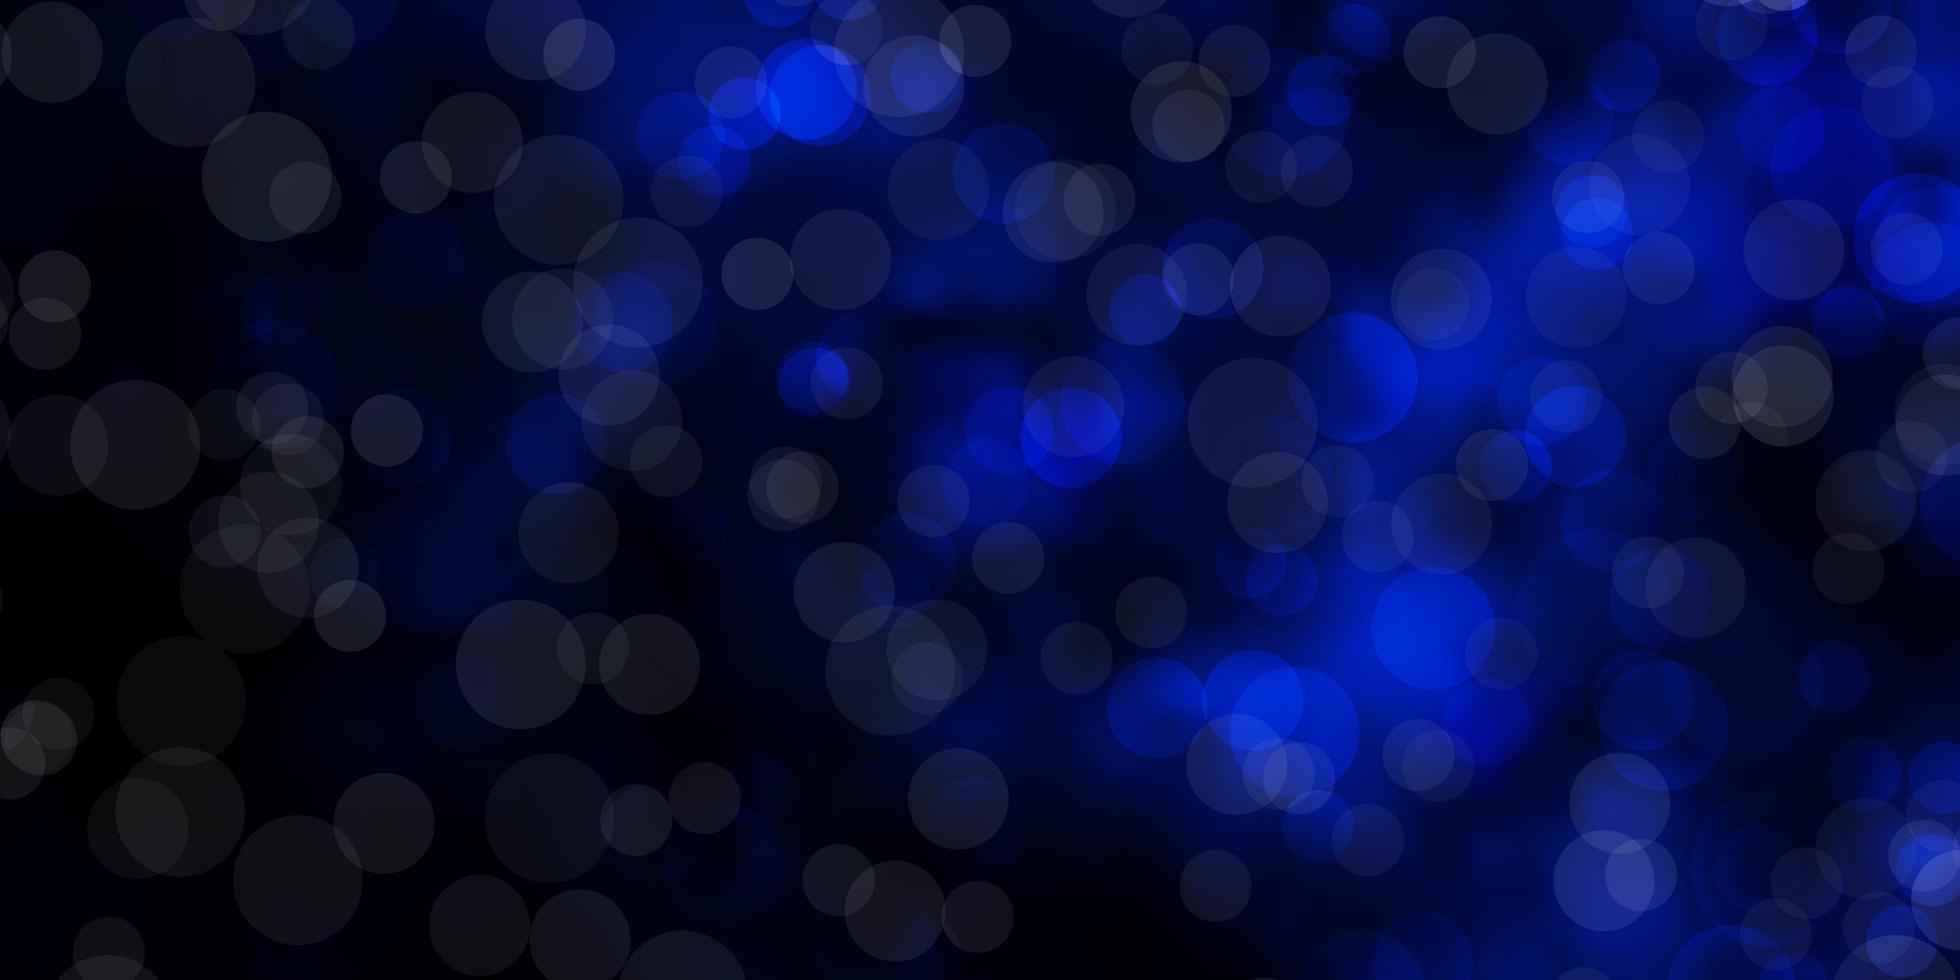 sfondo vettoriale blu scuro con cerchi. illustrazione astratta con macchie colorate in stile natura. modello per sfondi, tende.